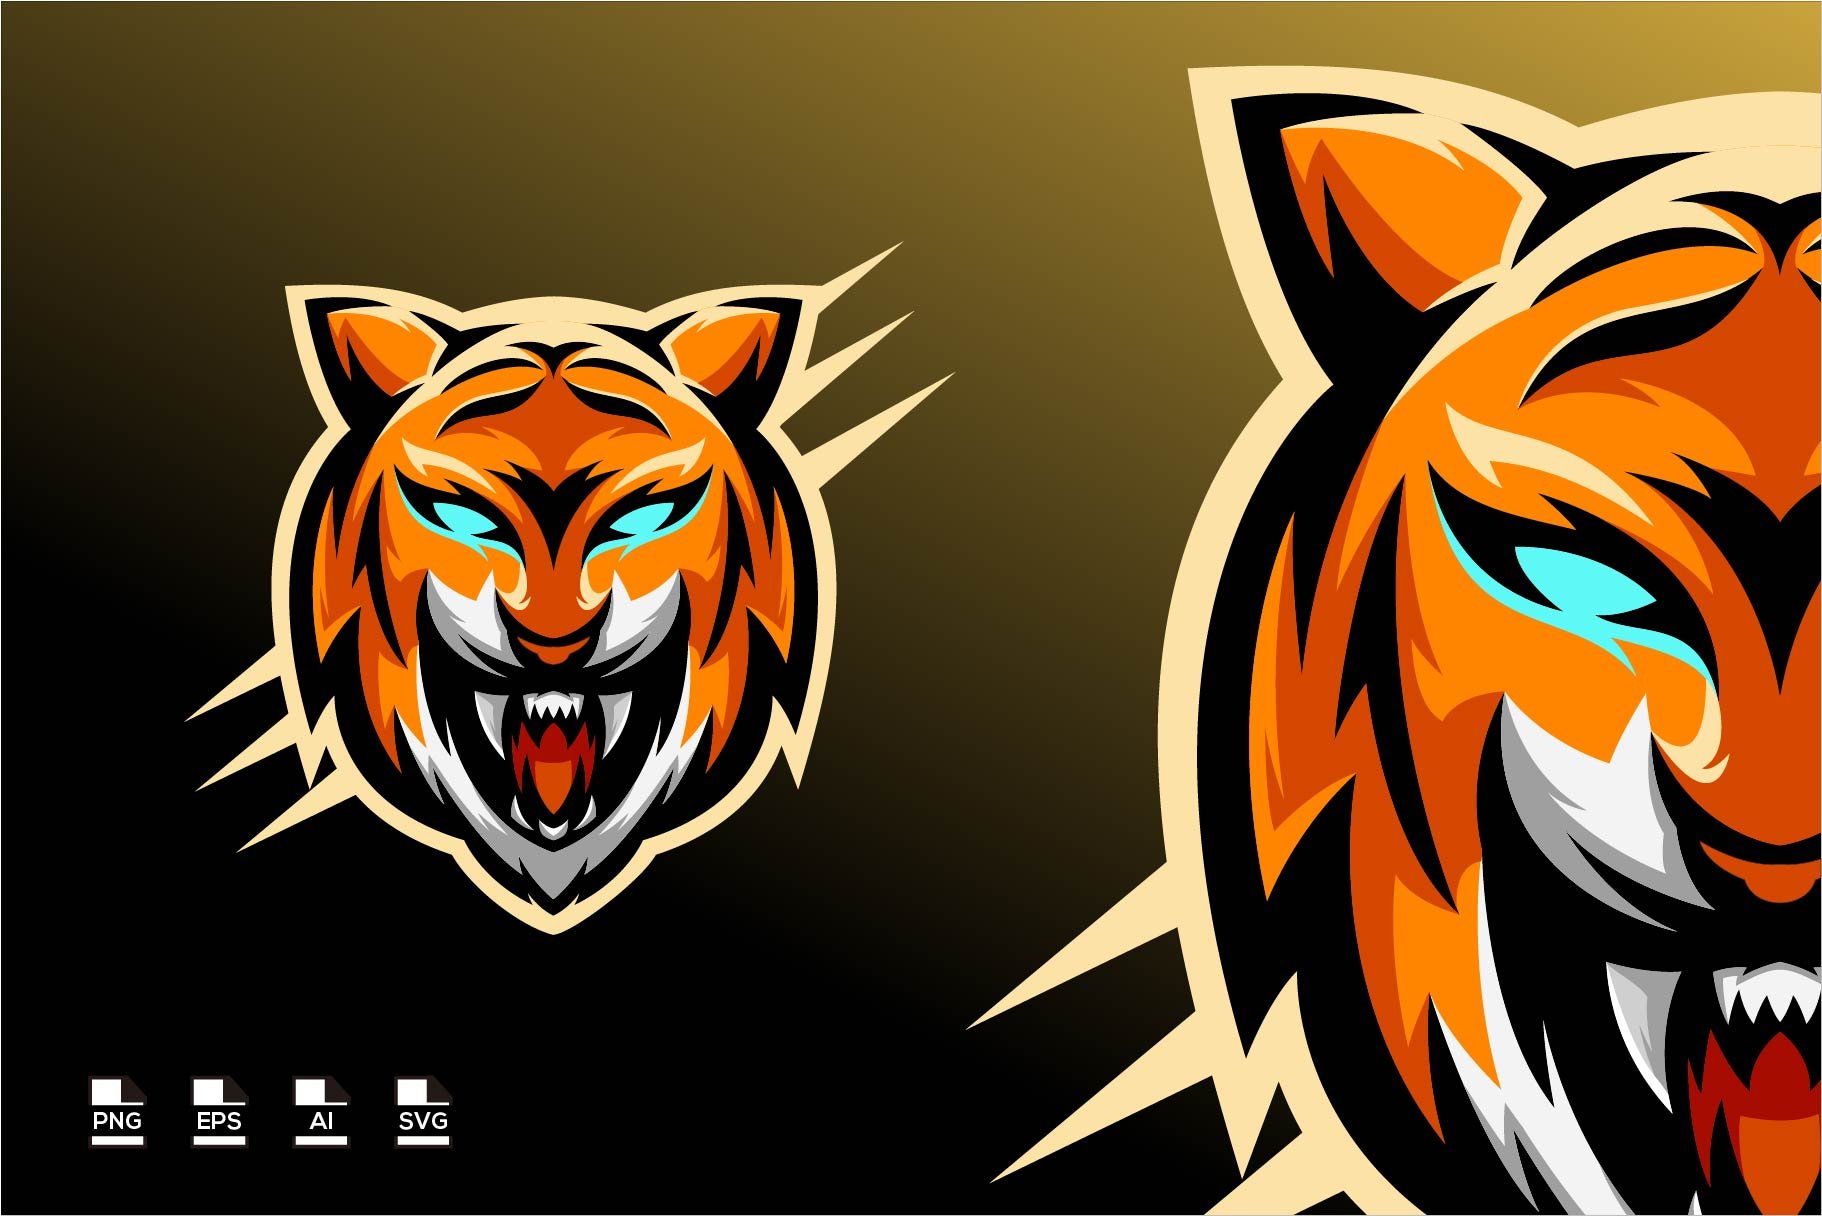 ArtStation - Tiger Gaming Mascot Logo